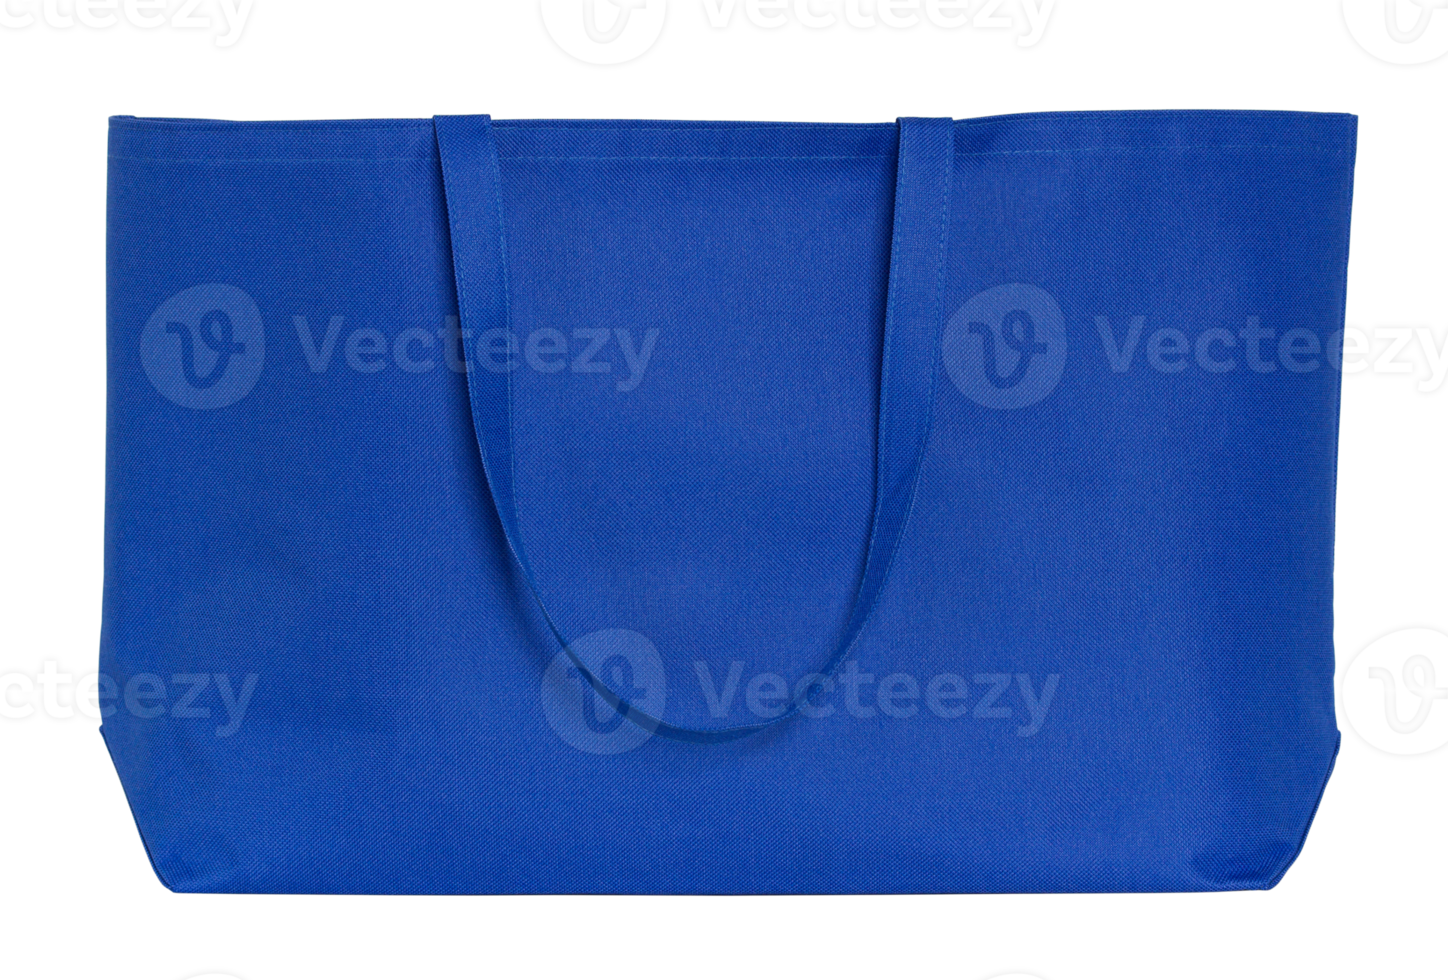 blauw kleding stof zak geïsoleerd met knipsel pad voor mockup png